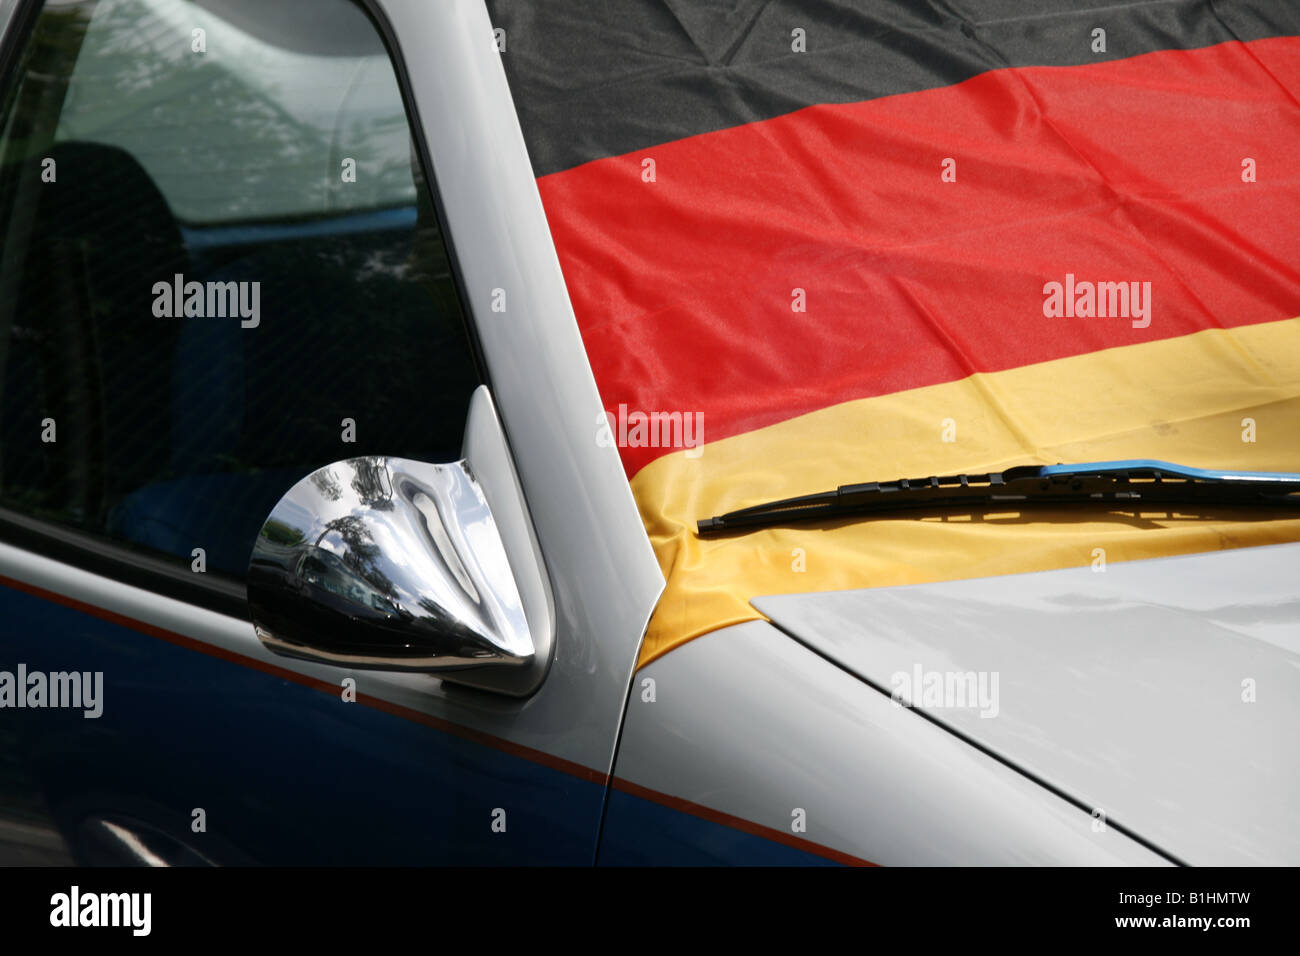 https://c8.alamy.com/compde/b1hmtw/eine-deutsche-flagge-fur-auto-windschutzscheibe-b1hmtw.jpg